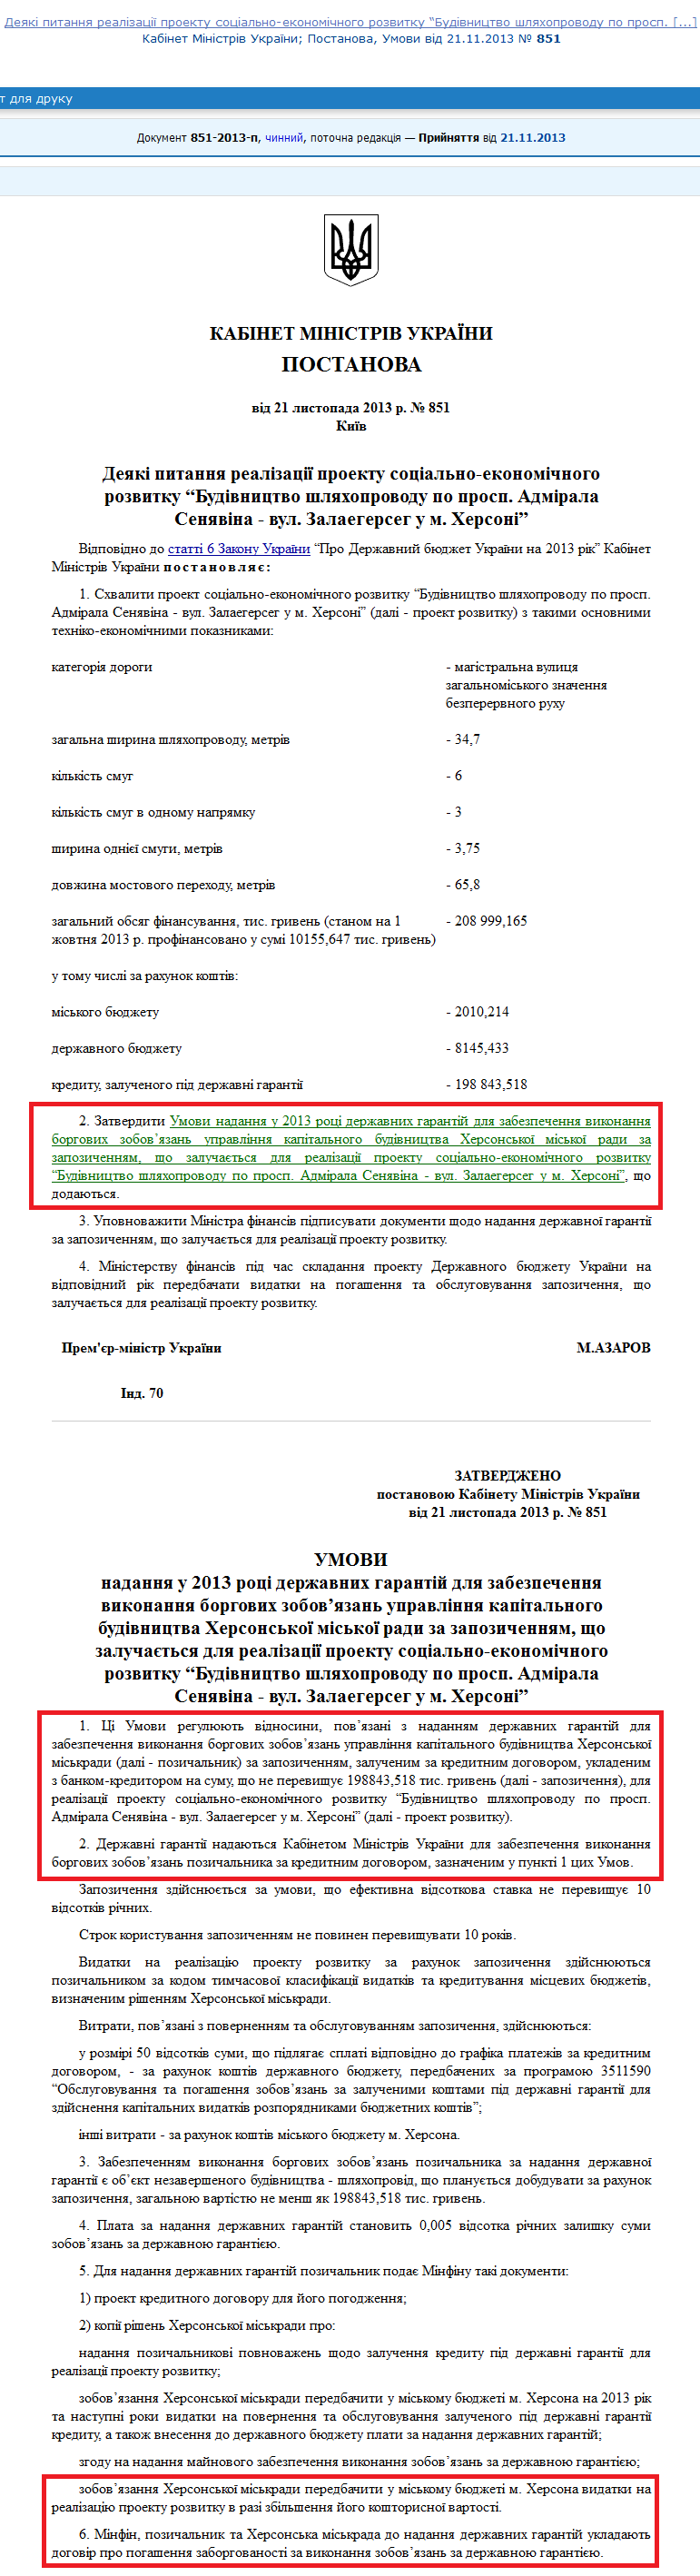 http://zakon1.rada.gov.ua/laws/show/851-2013-%D0%BF